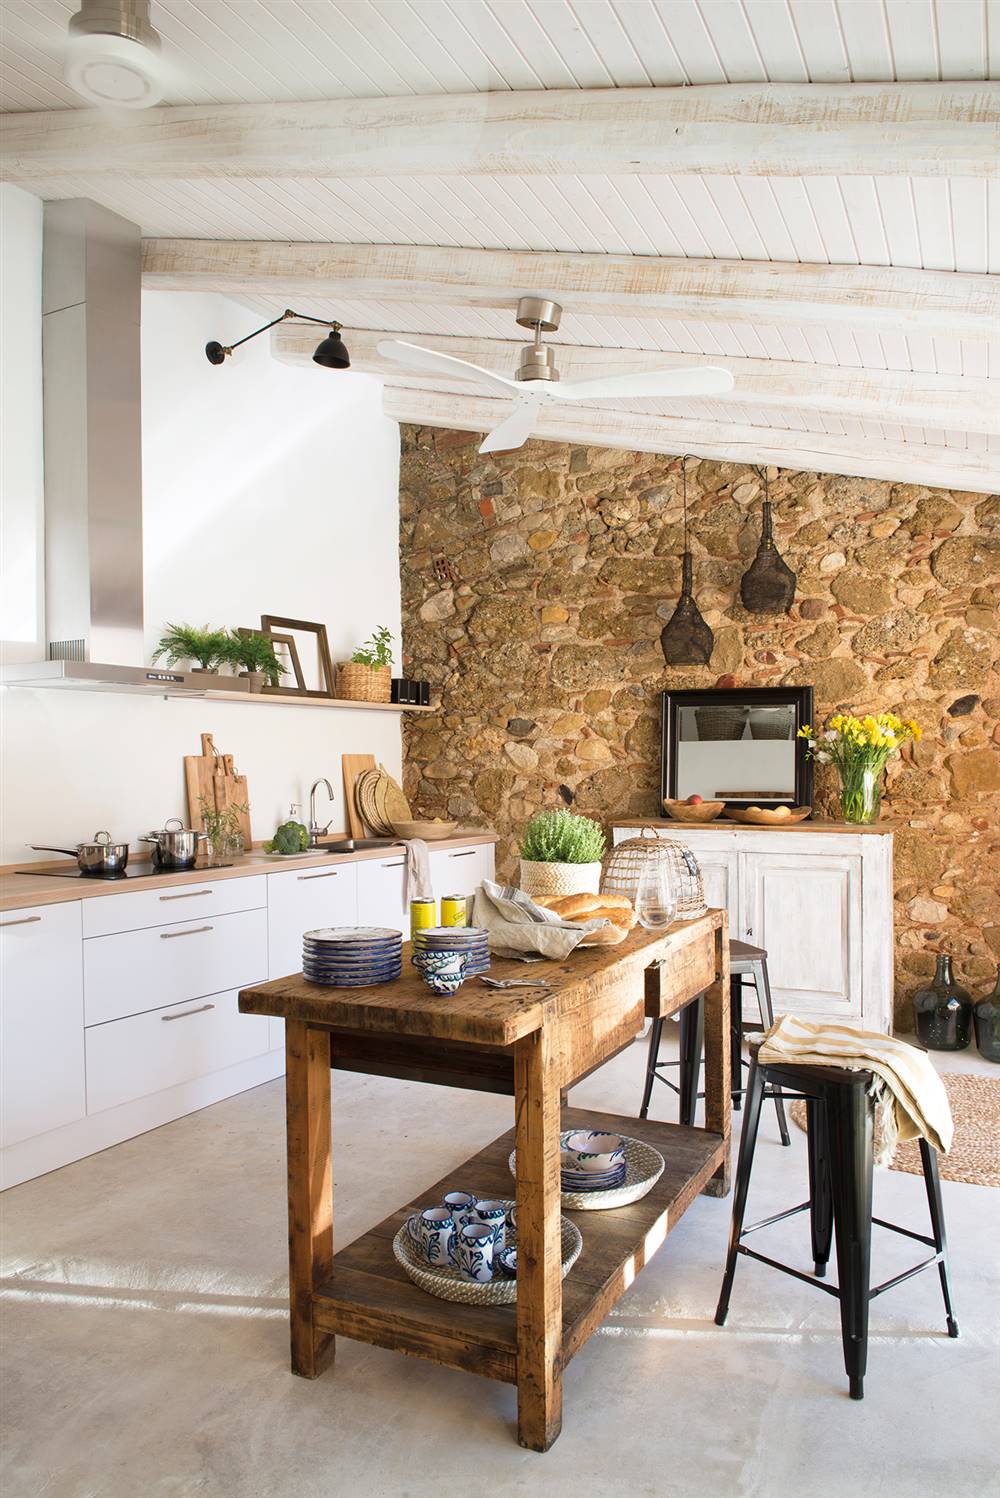 Cocina blanca con pared de piedra, vigas de madera en blanco e isla central con mueble recuperado_ 00438574